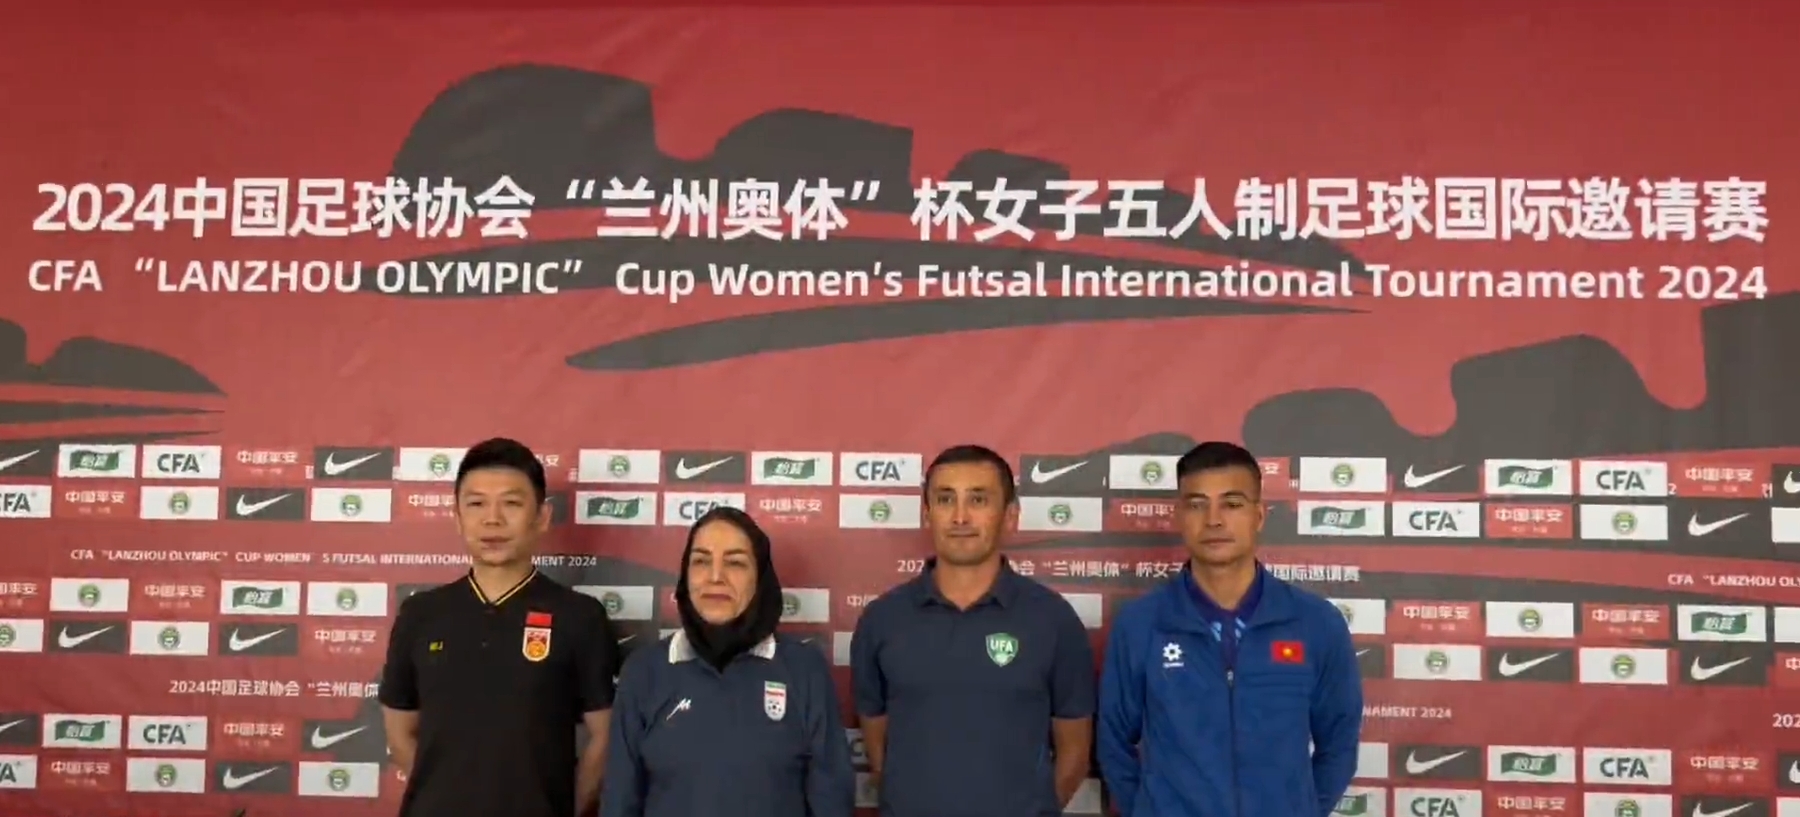 2024年中国足协“兰州奥体”杯女子五人制足球国际邀请赛媒体见面会纪实 